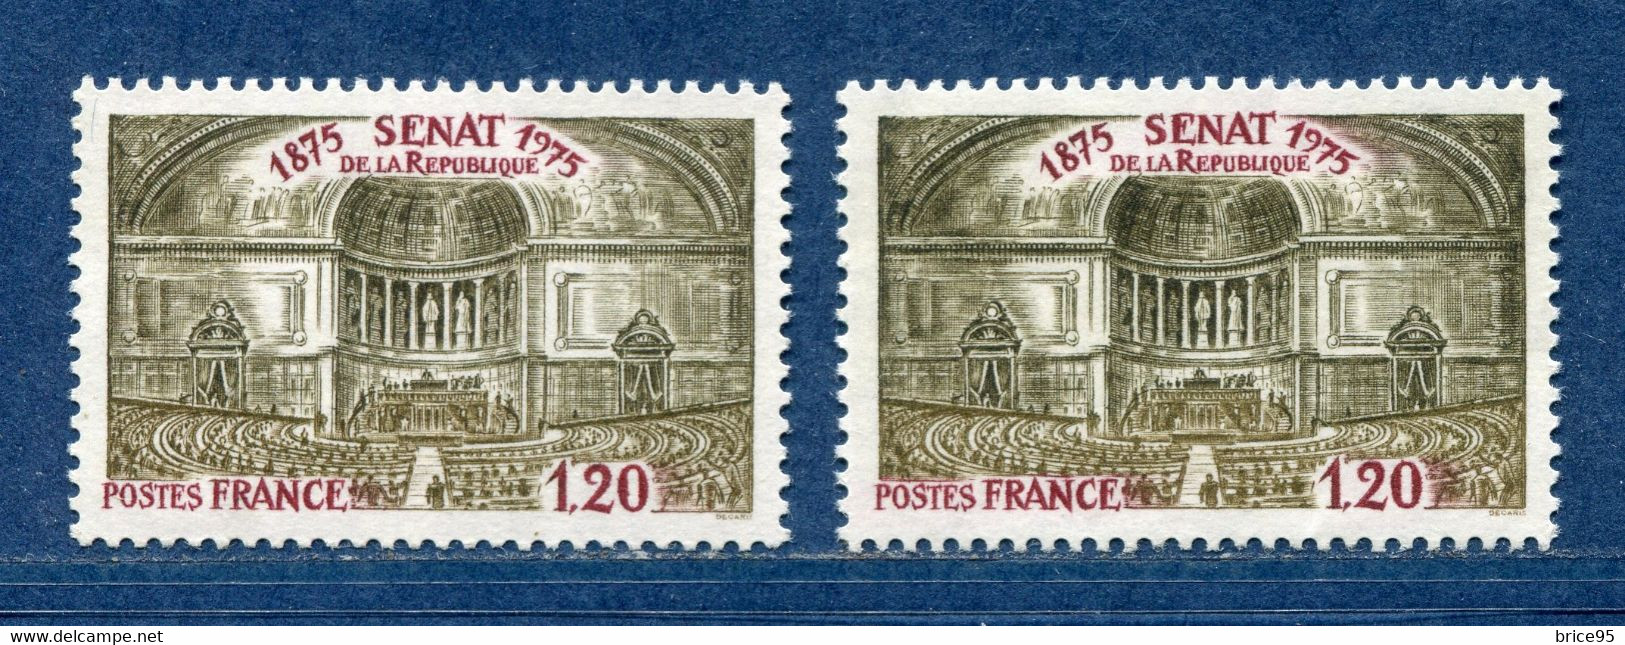 ⭐ France - Variété - YT N° 1843 - Couleurs - Pétouille - Neuf Sans Charnière - 1975 ⭐ - Neufs